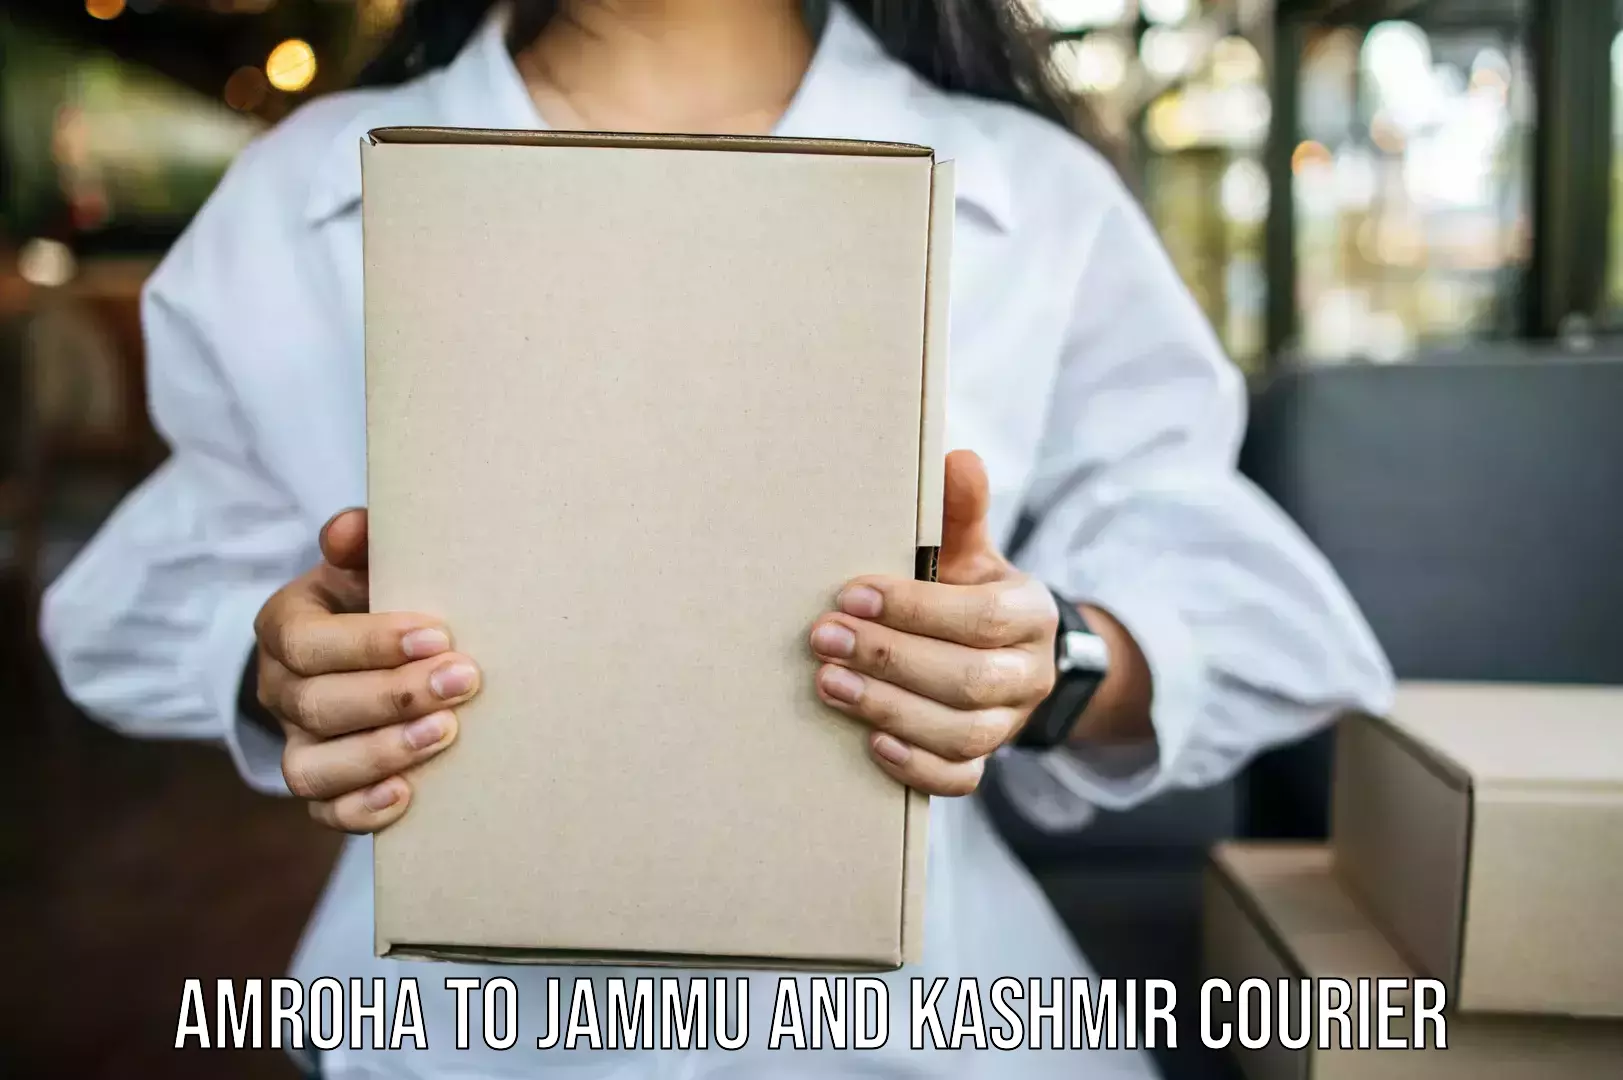 Seamless moving process Amroha to IIT Jammu